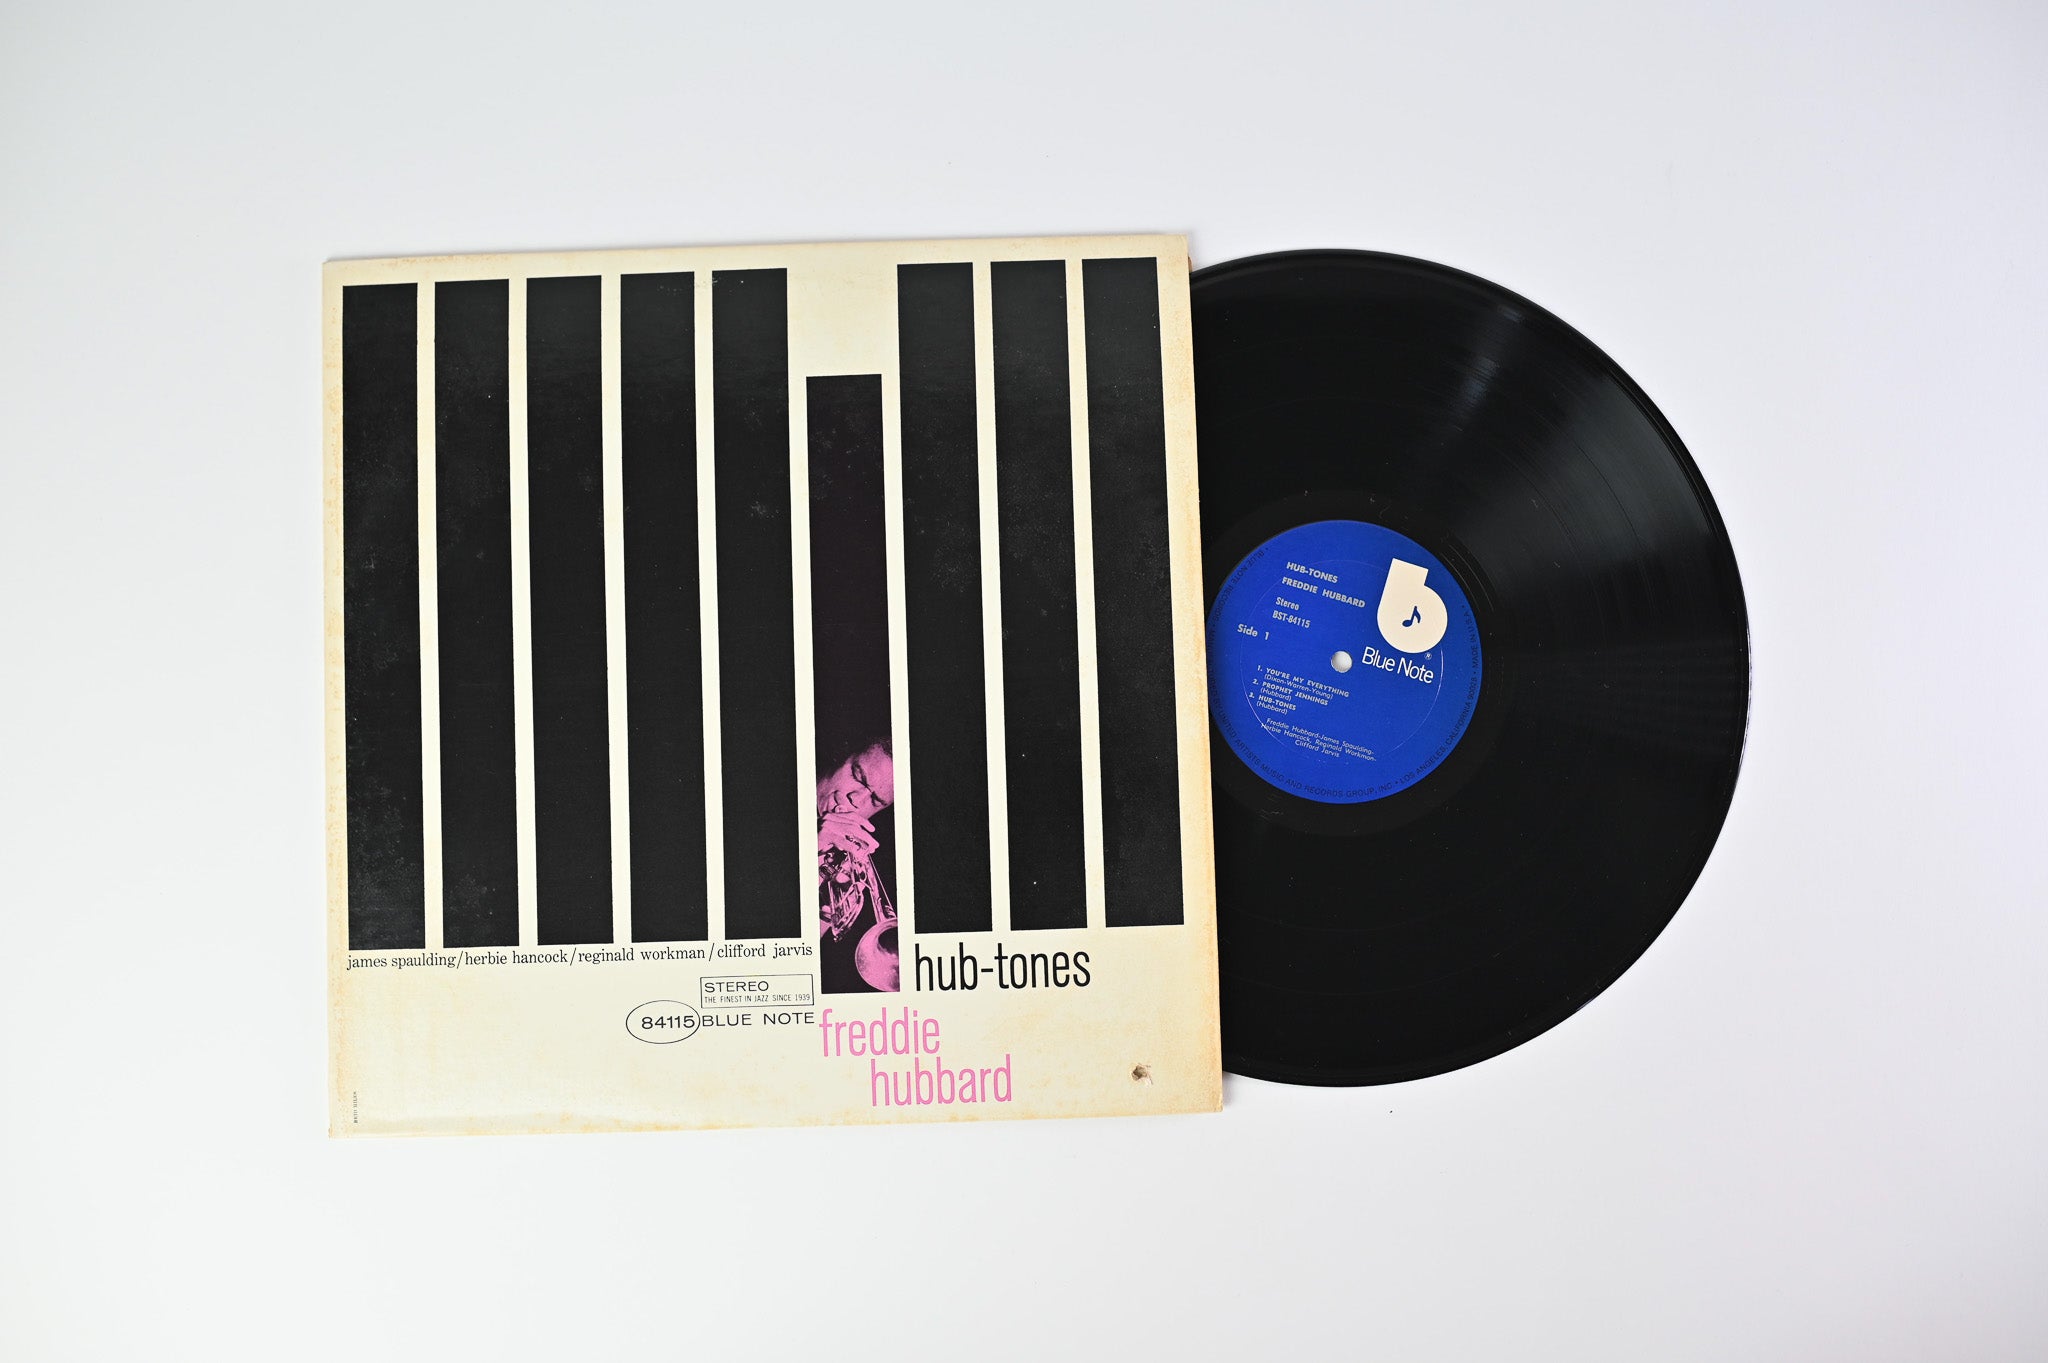 Freddie Hubbard - Hub-Tones on Blue Note Reissue